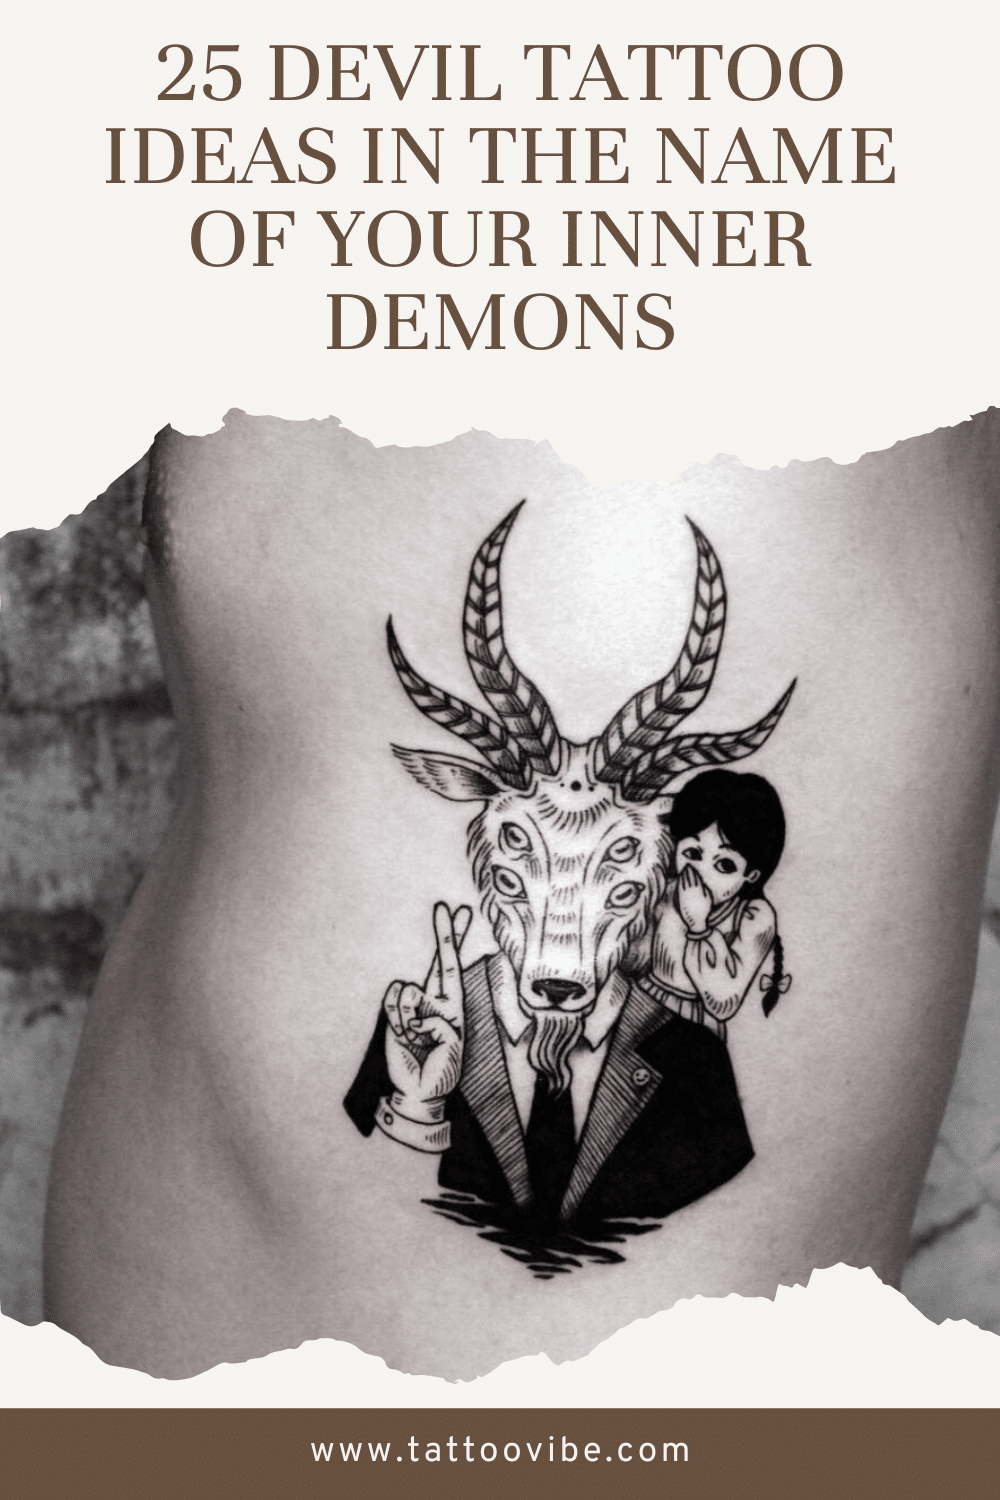 25 idées de tatouage de diable au nom de vos démons intérieurs